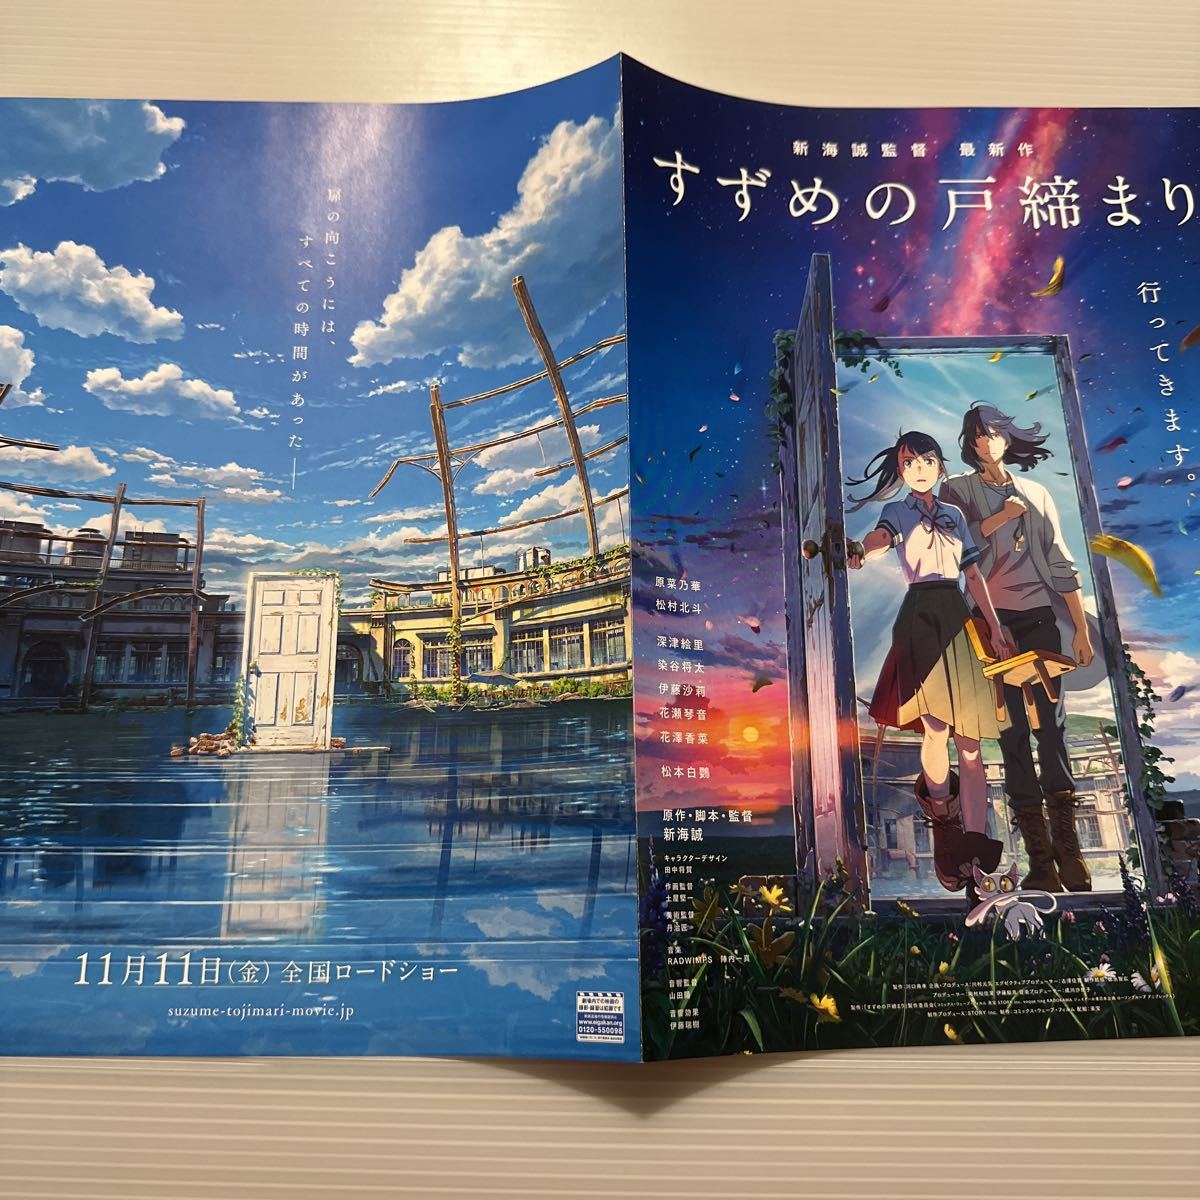 su... door .. theater version movie leaflet Flyer approximately 18.2×25.7 see . new sea .Japanese version movie Flyer Suzume makoto shinkai